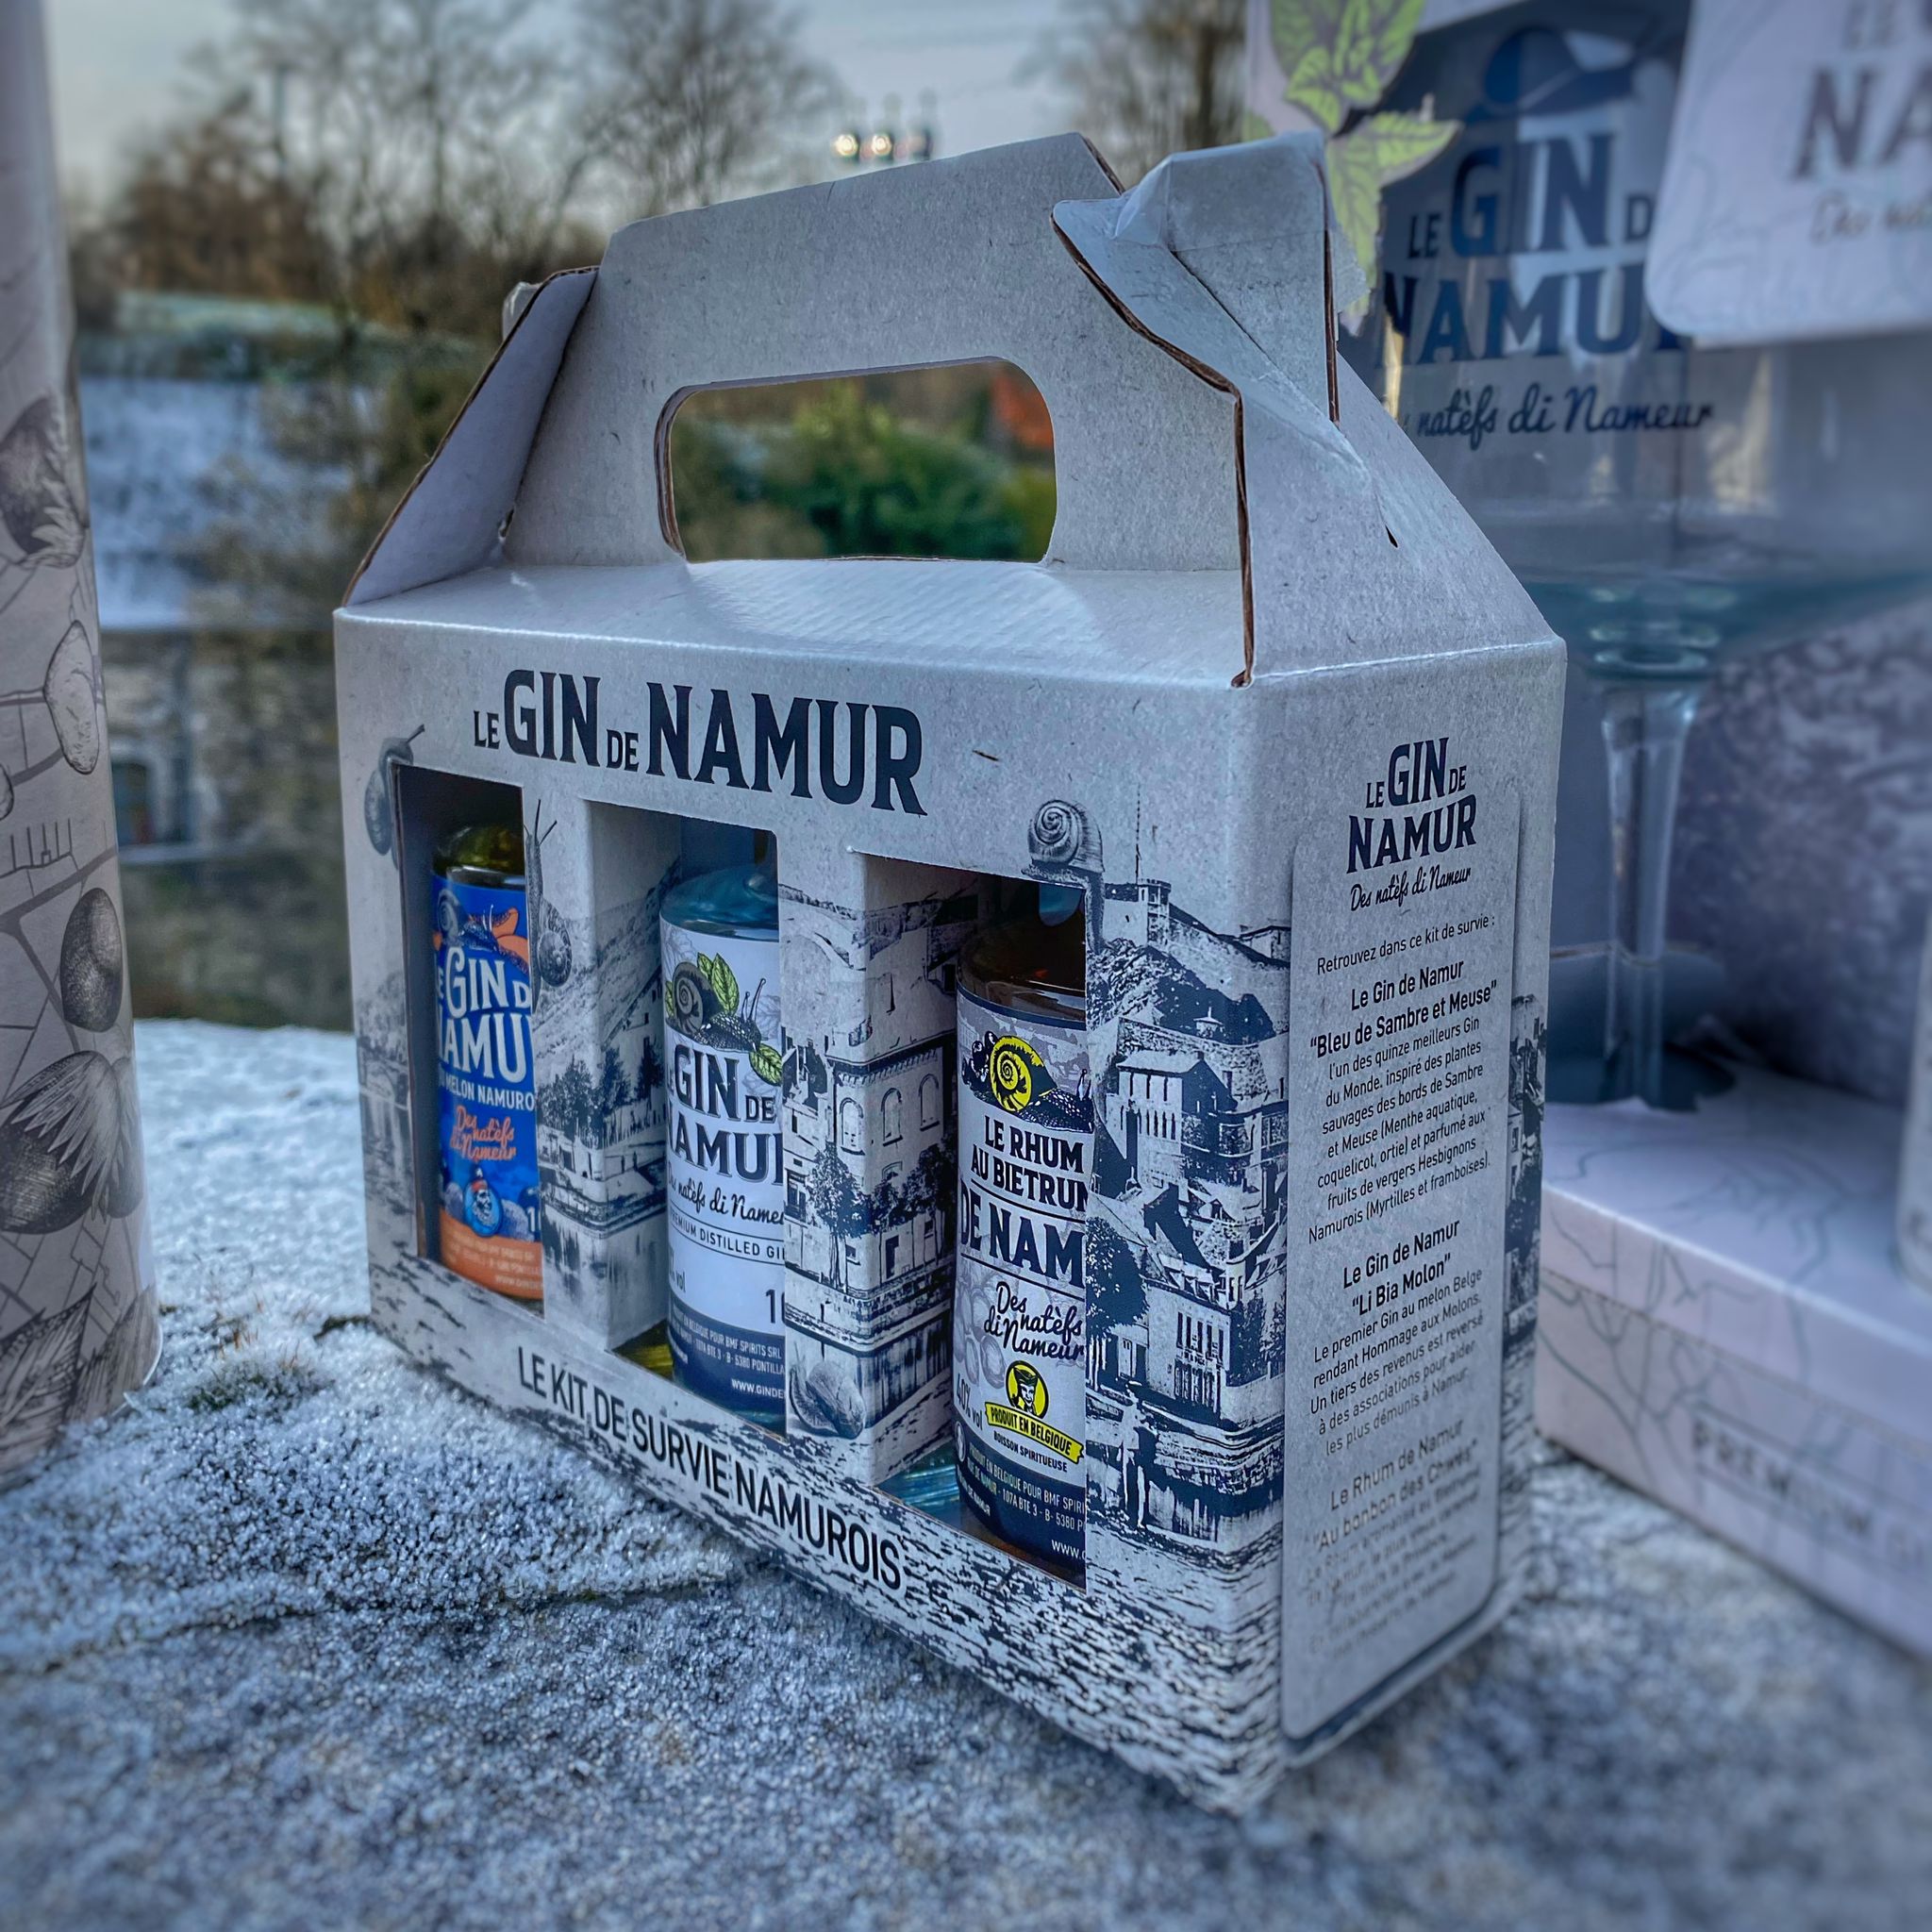 Le Kit de Survie Namurois – Le Gin de Namur